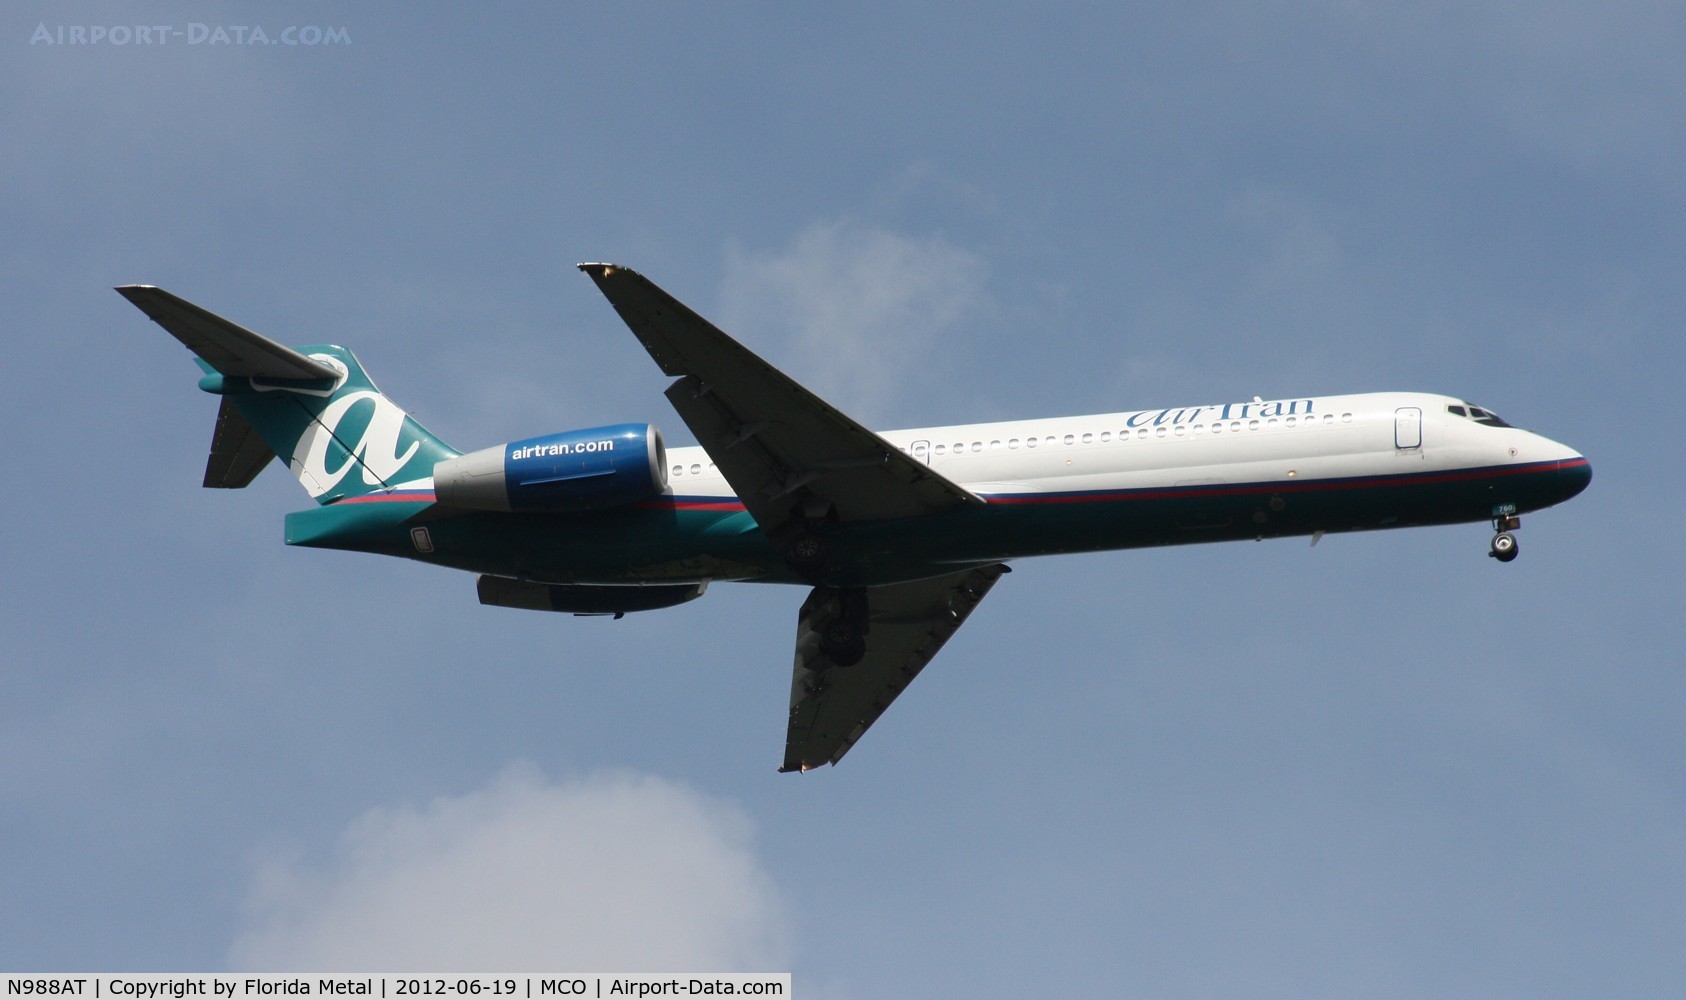 N988AT, 2001 Boeing 717-200 C/N 55068, Air Tran 717